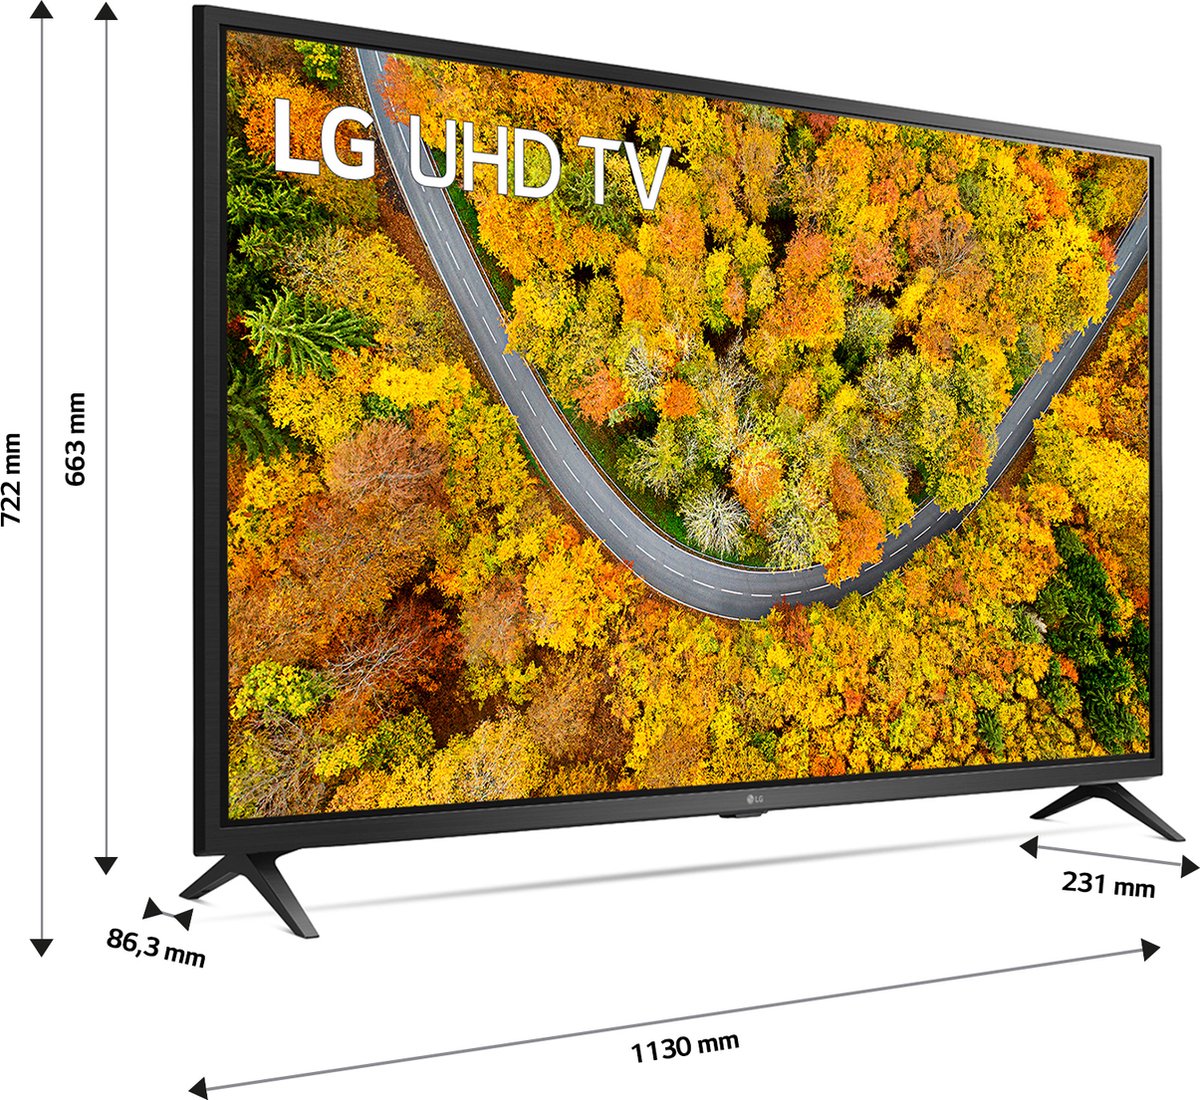 TV LG LED UHD SMART 50